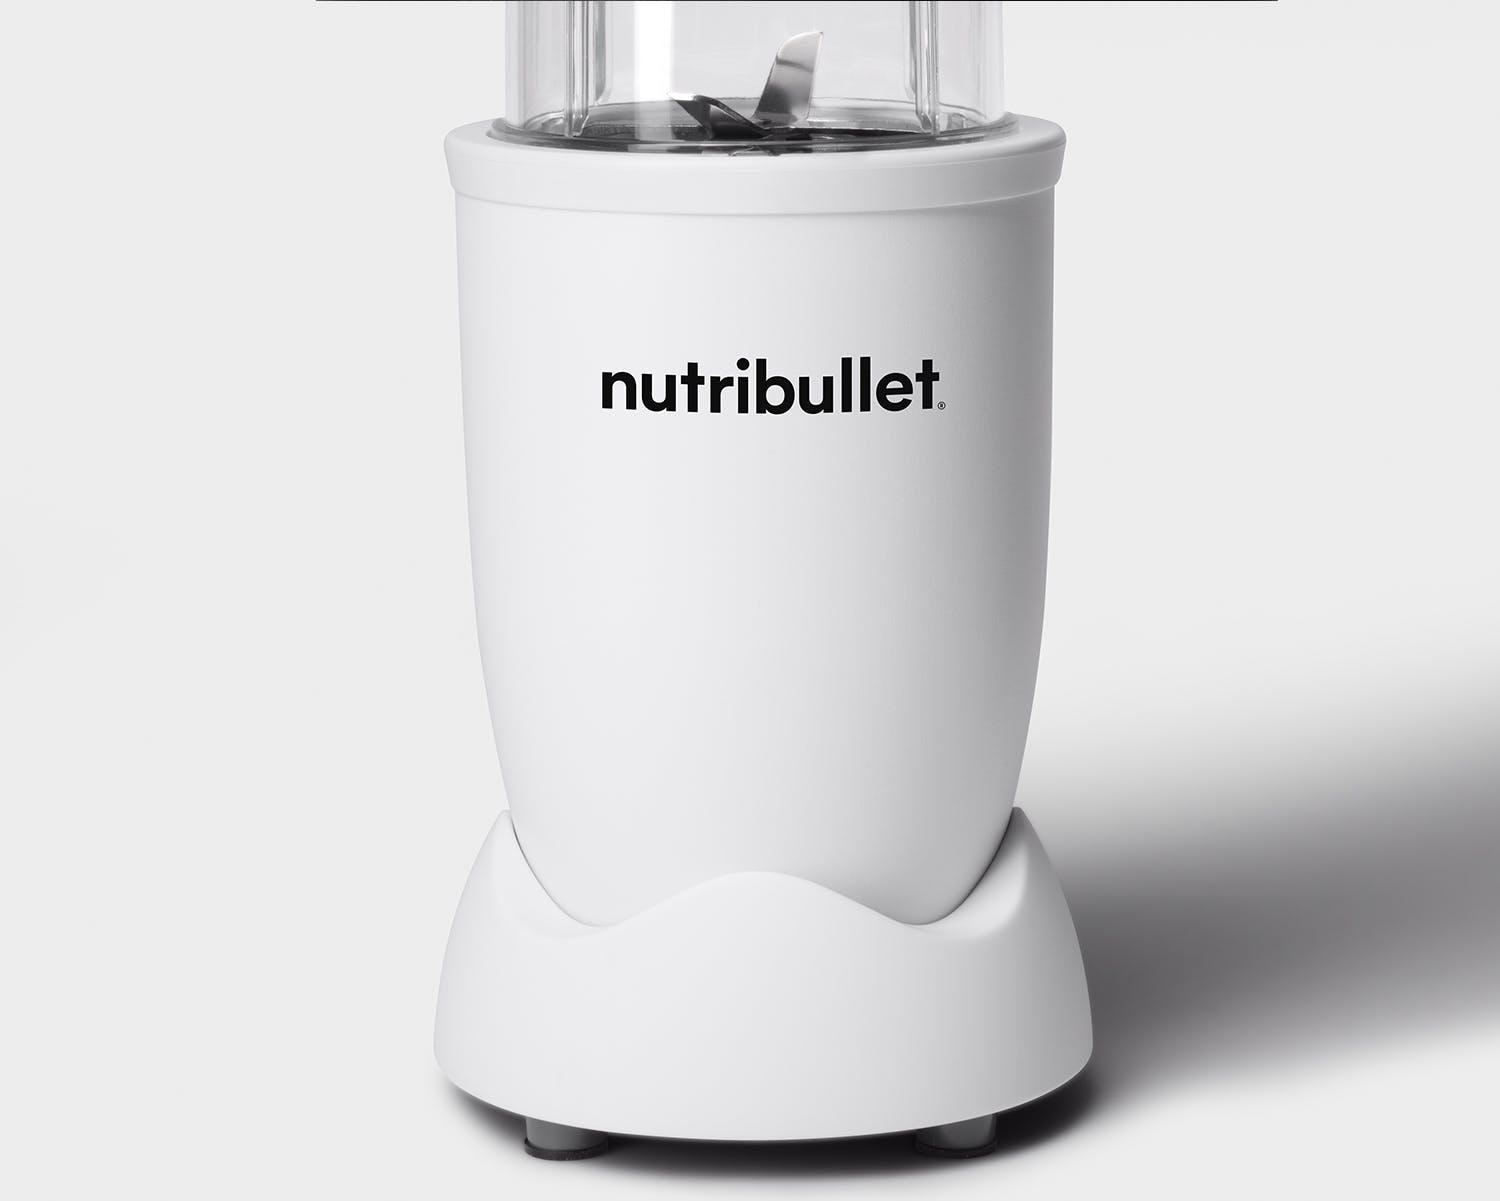 nutribullet (ニュートリブレット) ブレンダー nutribullet PRO 900 マットオールホワイト